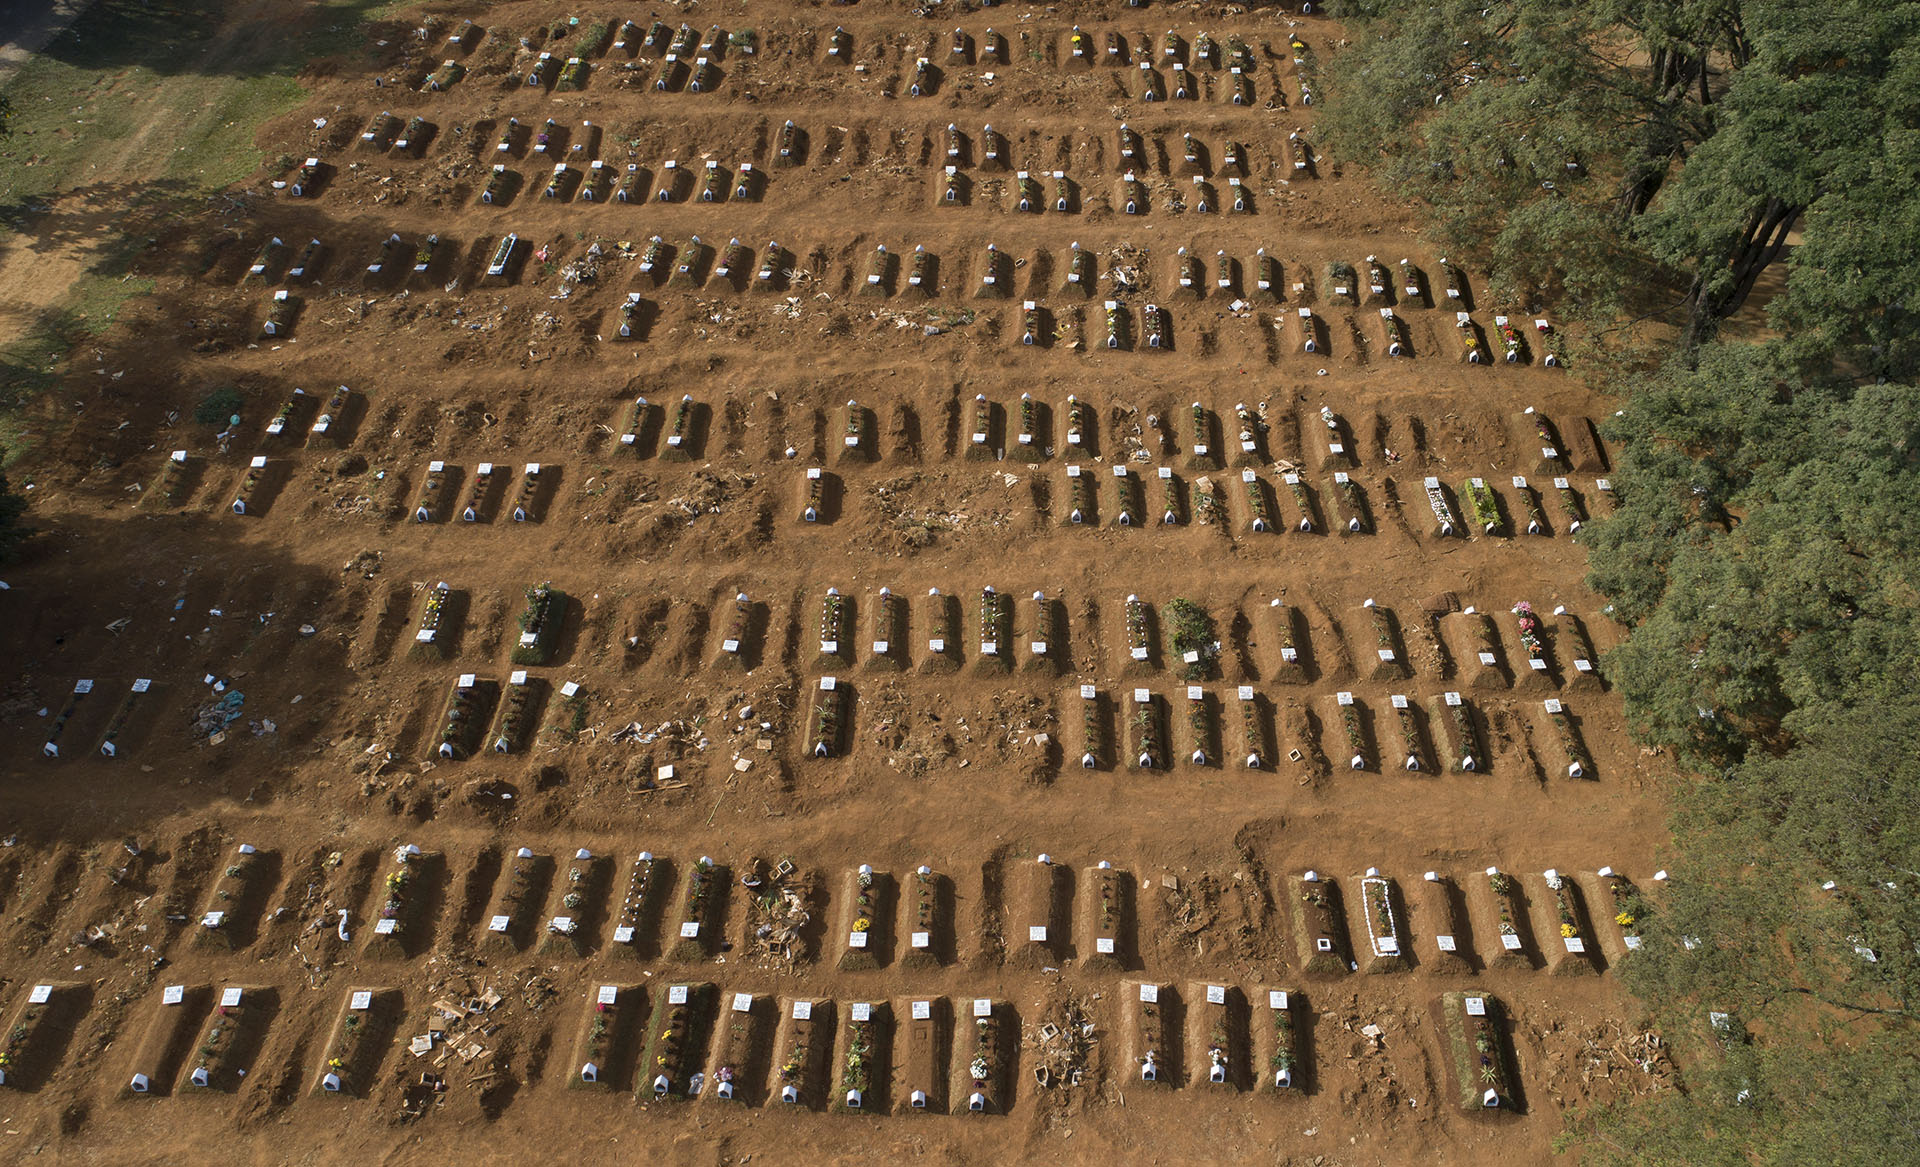 Tumbas abiertas en el cementerio de Vila Formosa durante la pandemia de coronavirus en Sao Paulo, Brasil, el jueves 30 de abril de 2020. (Foto AP/Andre Penner)